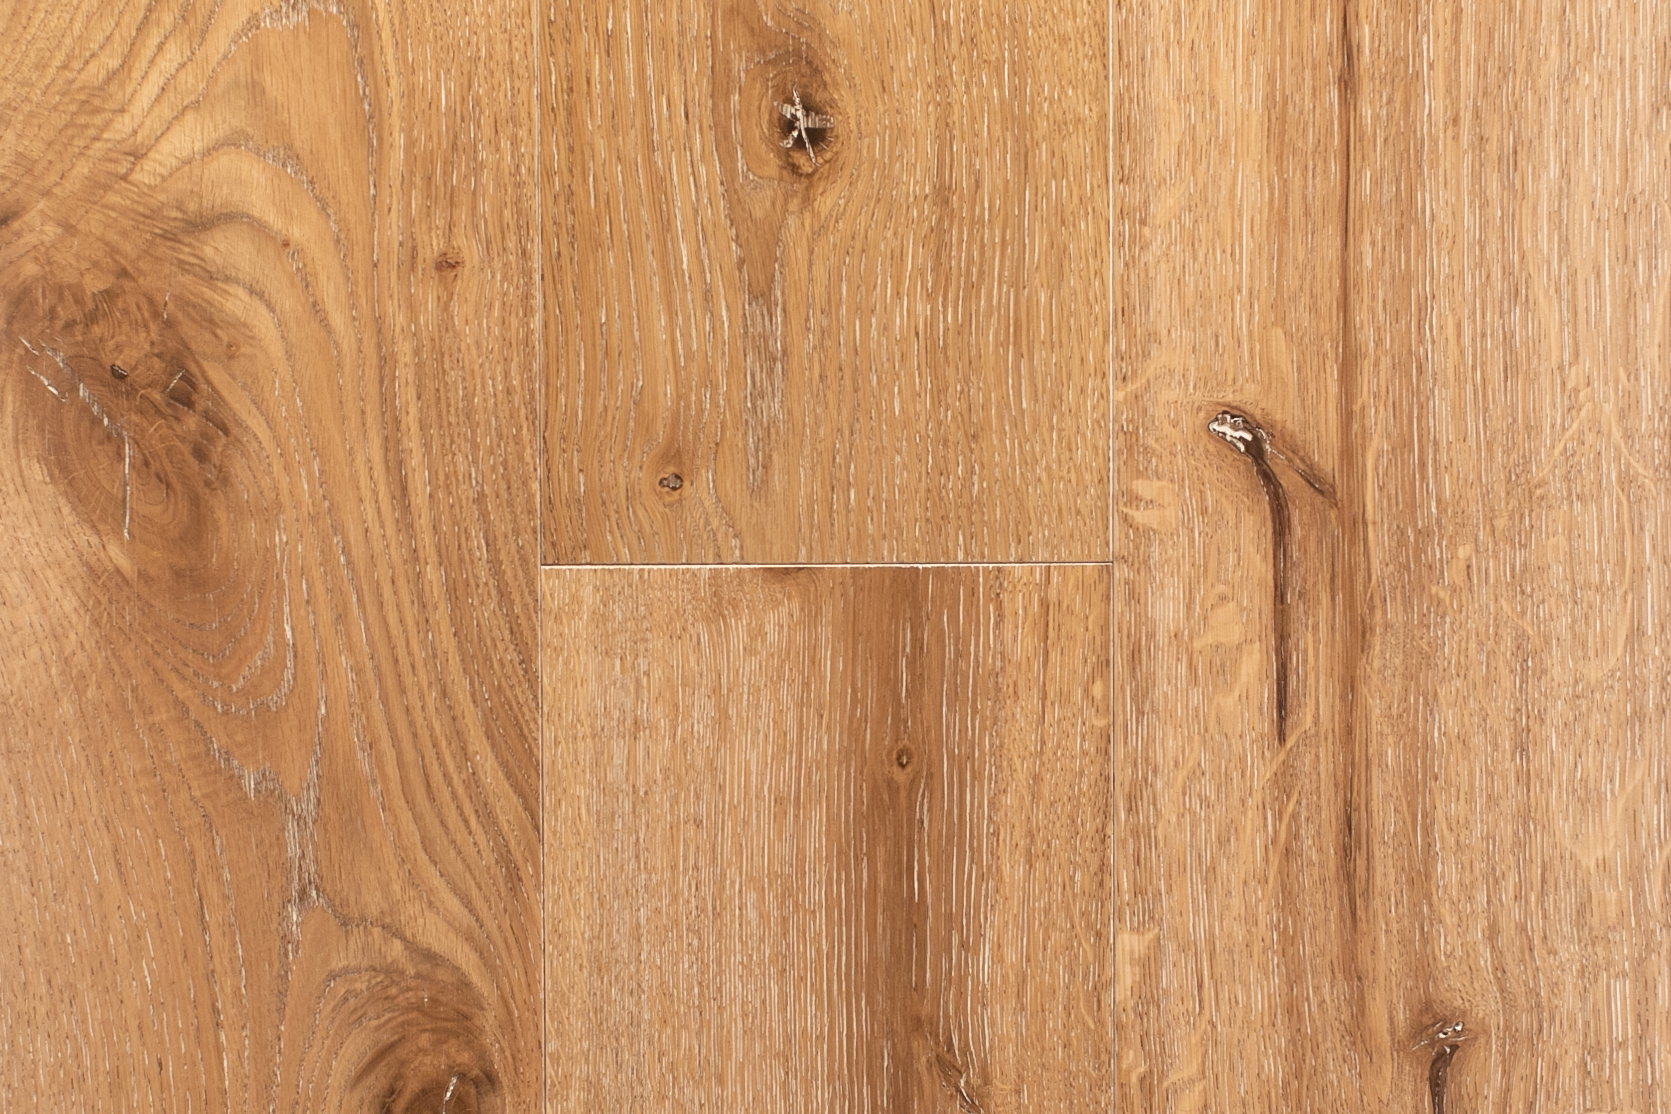 Buckeye Cochrans Lumber, Buckeye Hardwood Floors